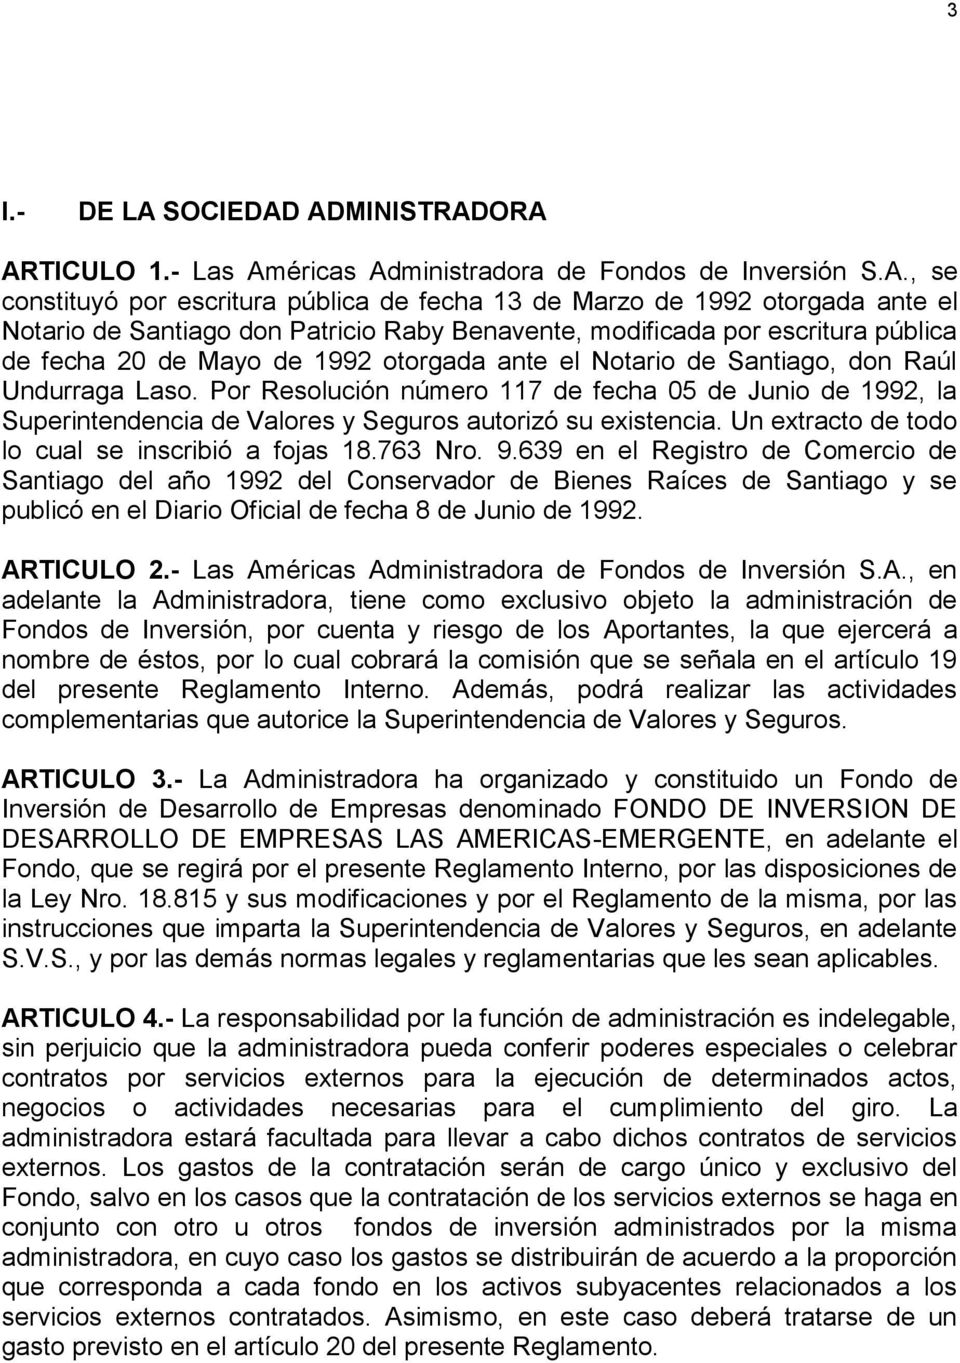 ADMINISTRADORA ARTICULO 1.- Las Américas Administradora de Fondos de Inversión S.A., se constituyó por escritura pública de fecha 13 de Marzo de 1992 otorgada ante el Notario de Santiago don Patricio